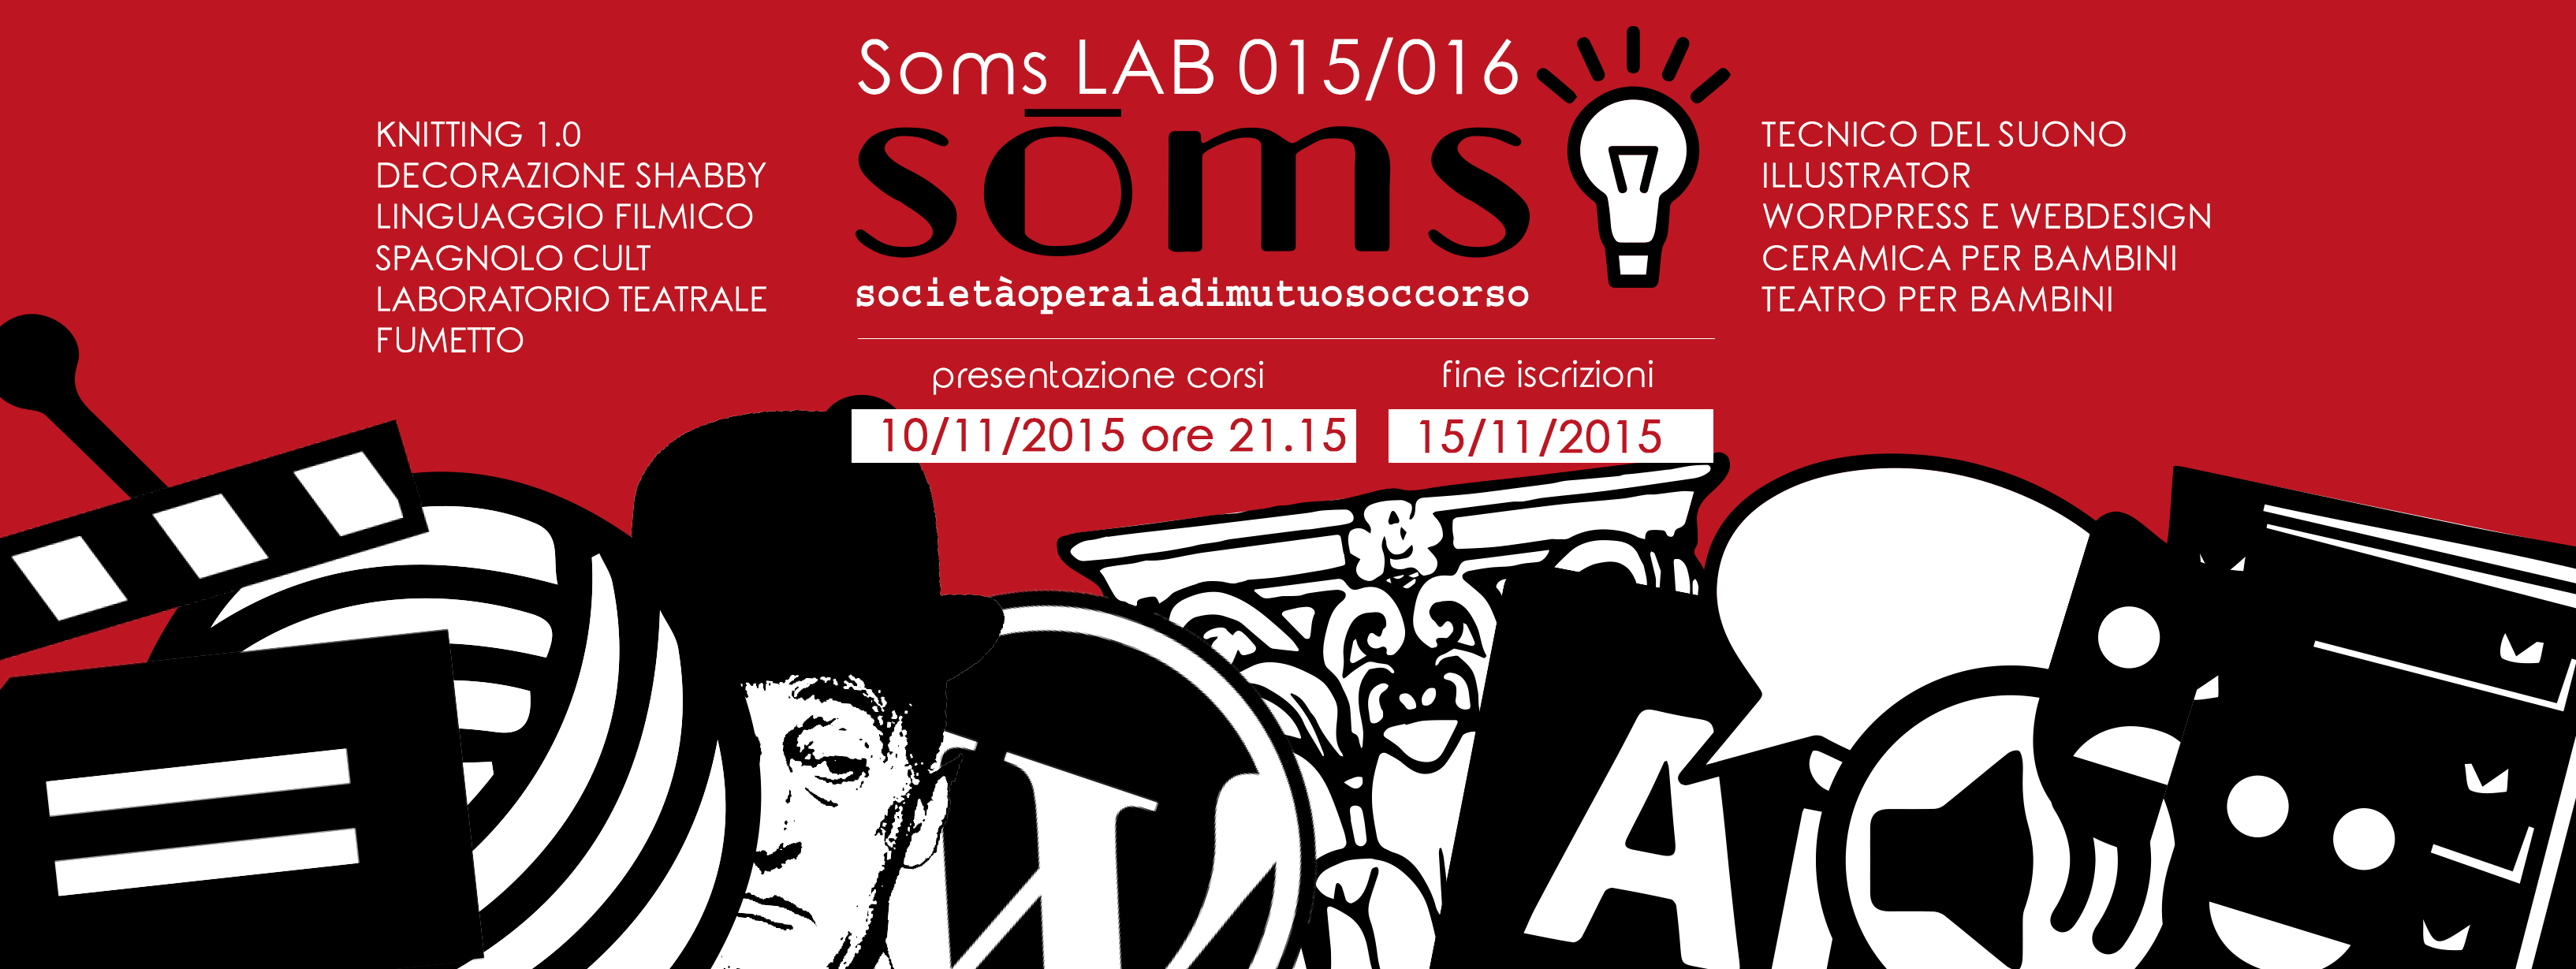 SOMS_Coesi_event2